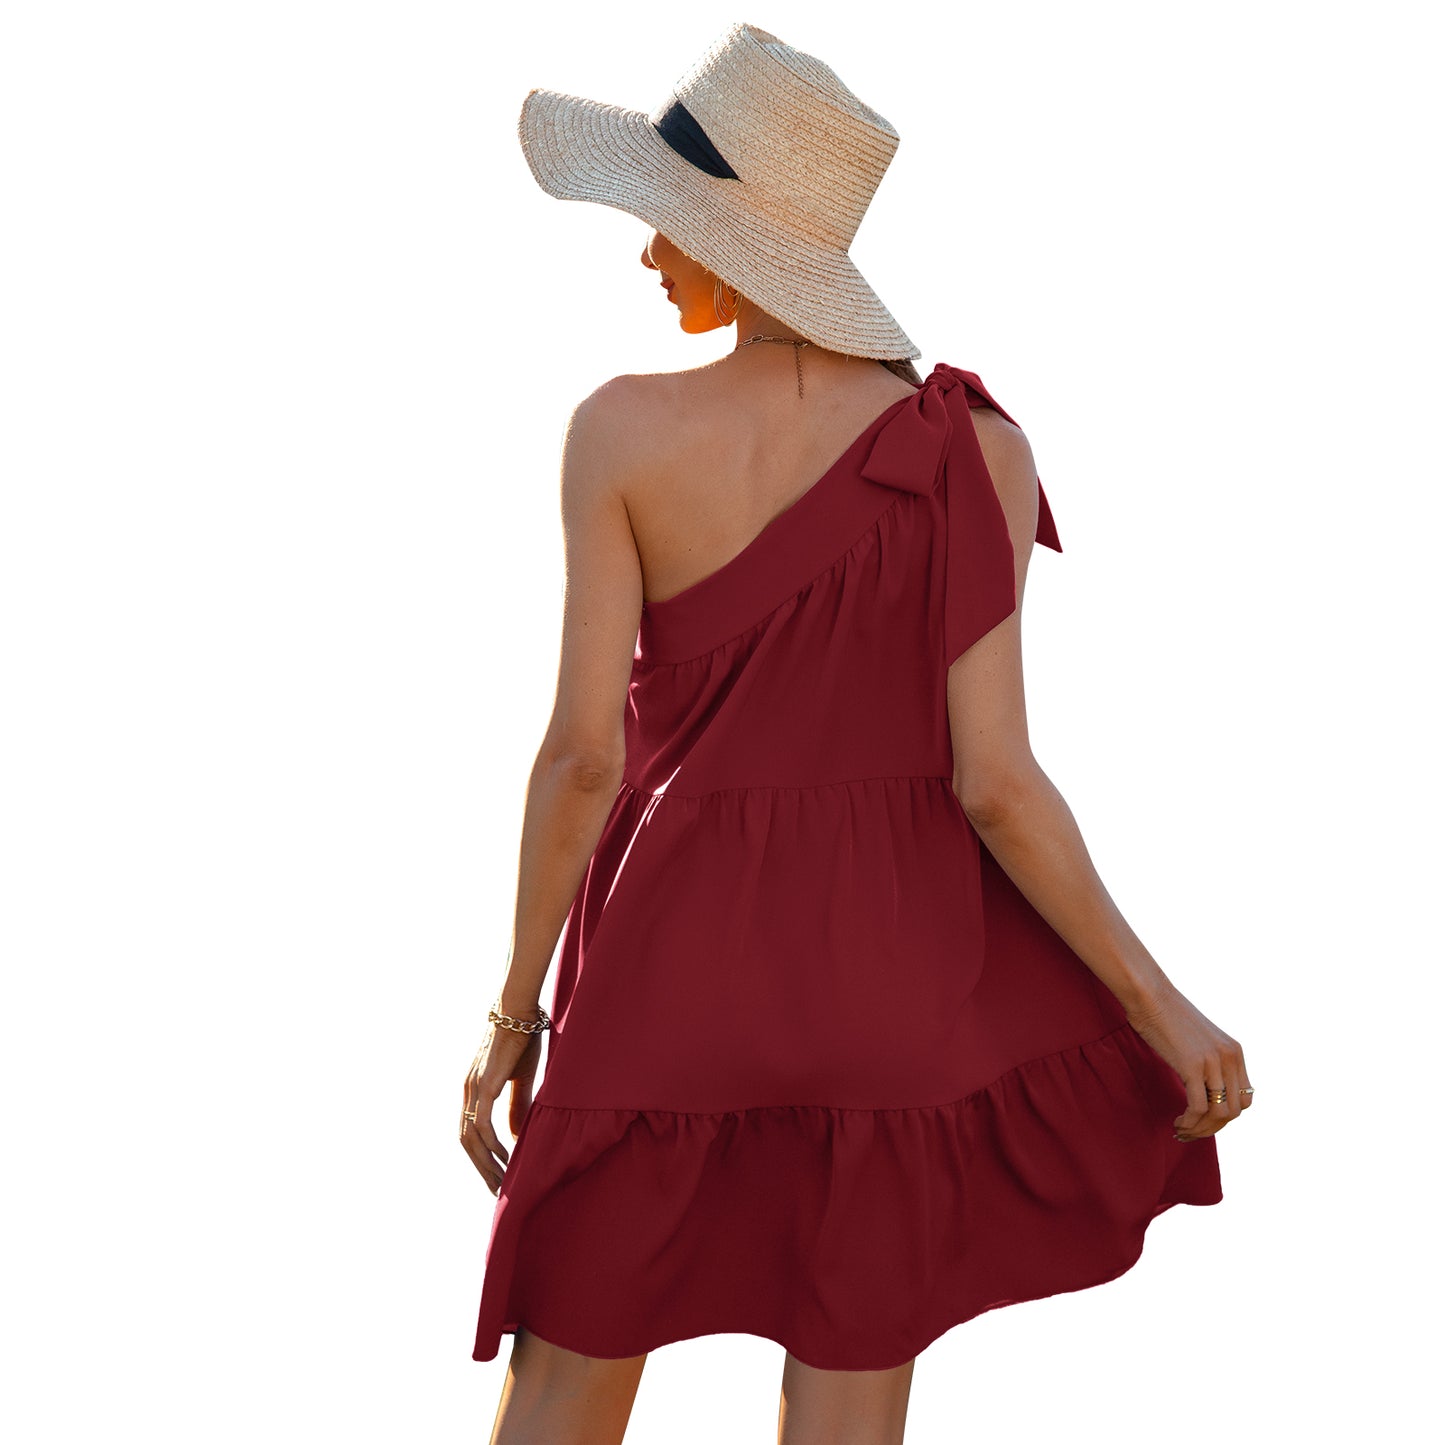 YESFASHION New Small Chiffon Skirt Beauty Design French Dress